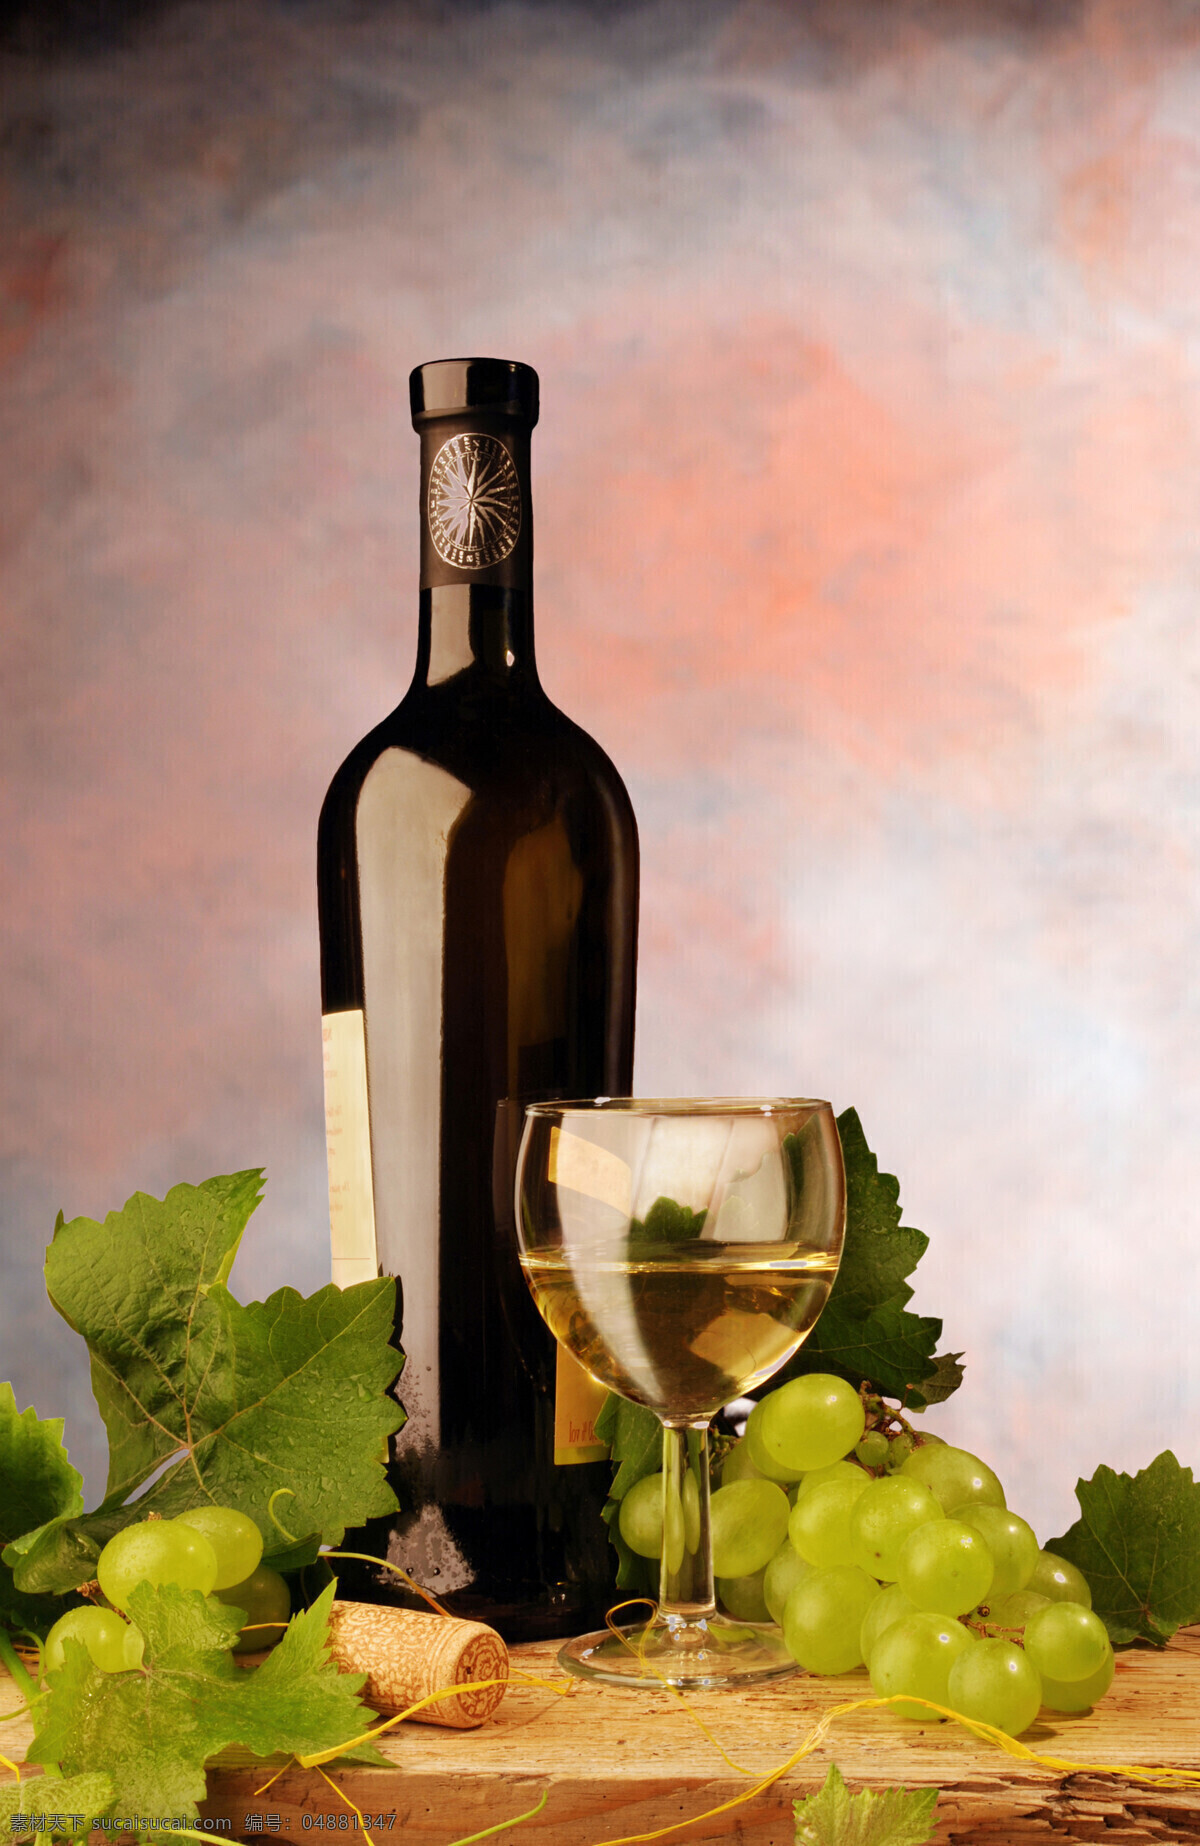 葡萄与酒杯 水果 葡萄 木板 酒杯 红酒 葡萄叶 水果蔬菜 餐饮美食 黑色